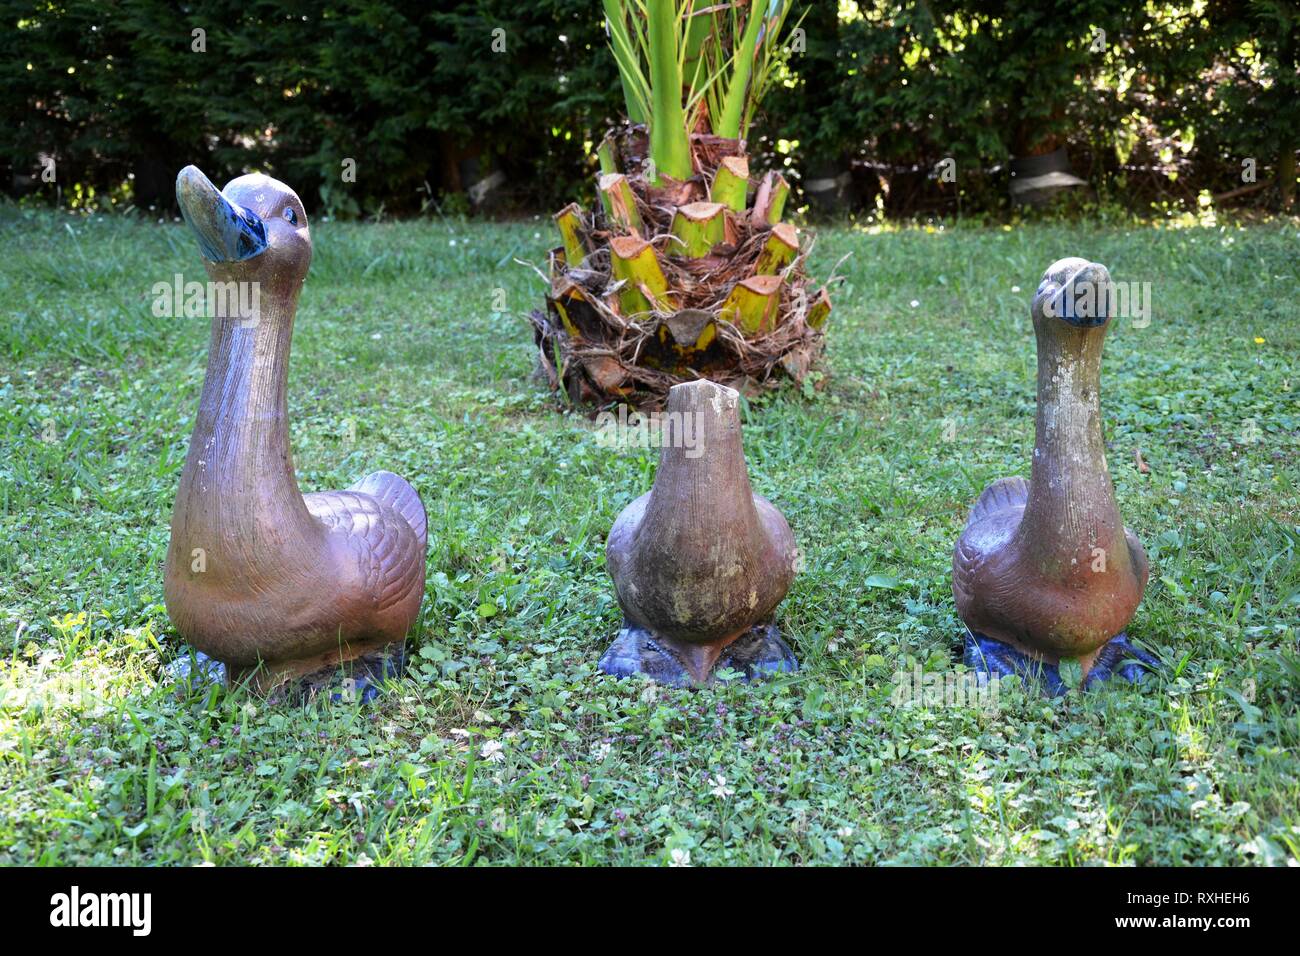 Tre statue di anatre sull'erba, uno senza testa Foto Stock